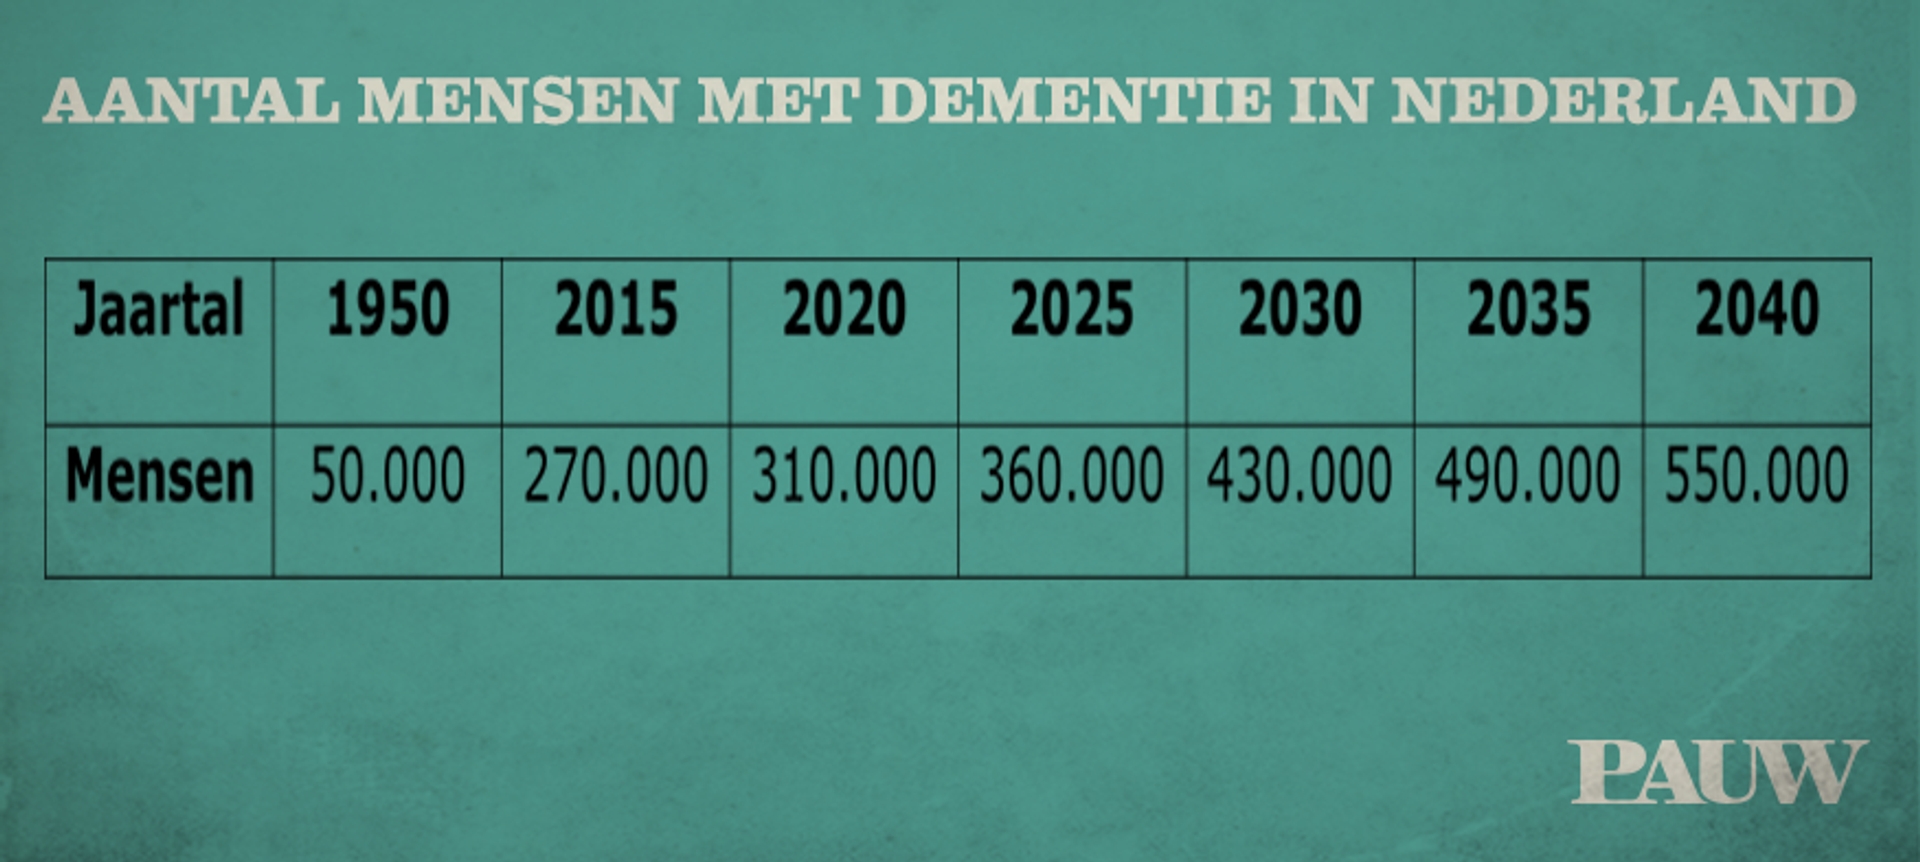 Aantal mensen met dementie in NL